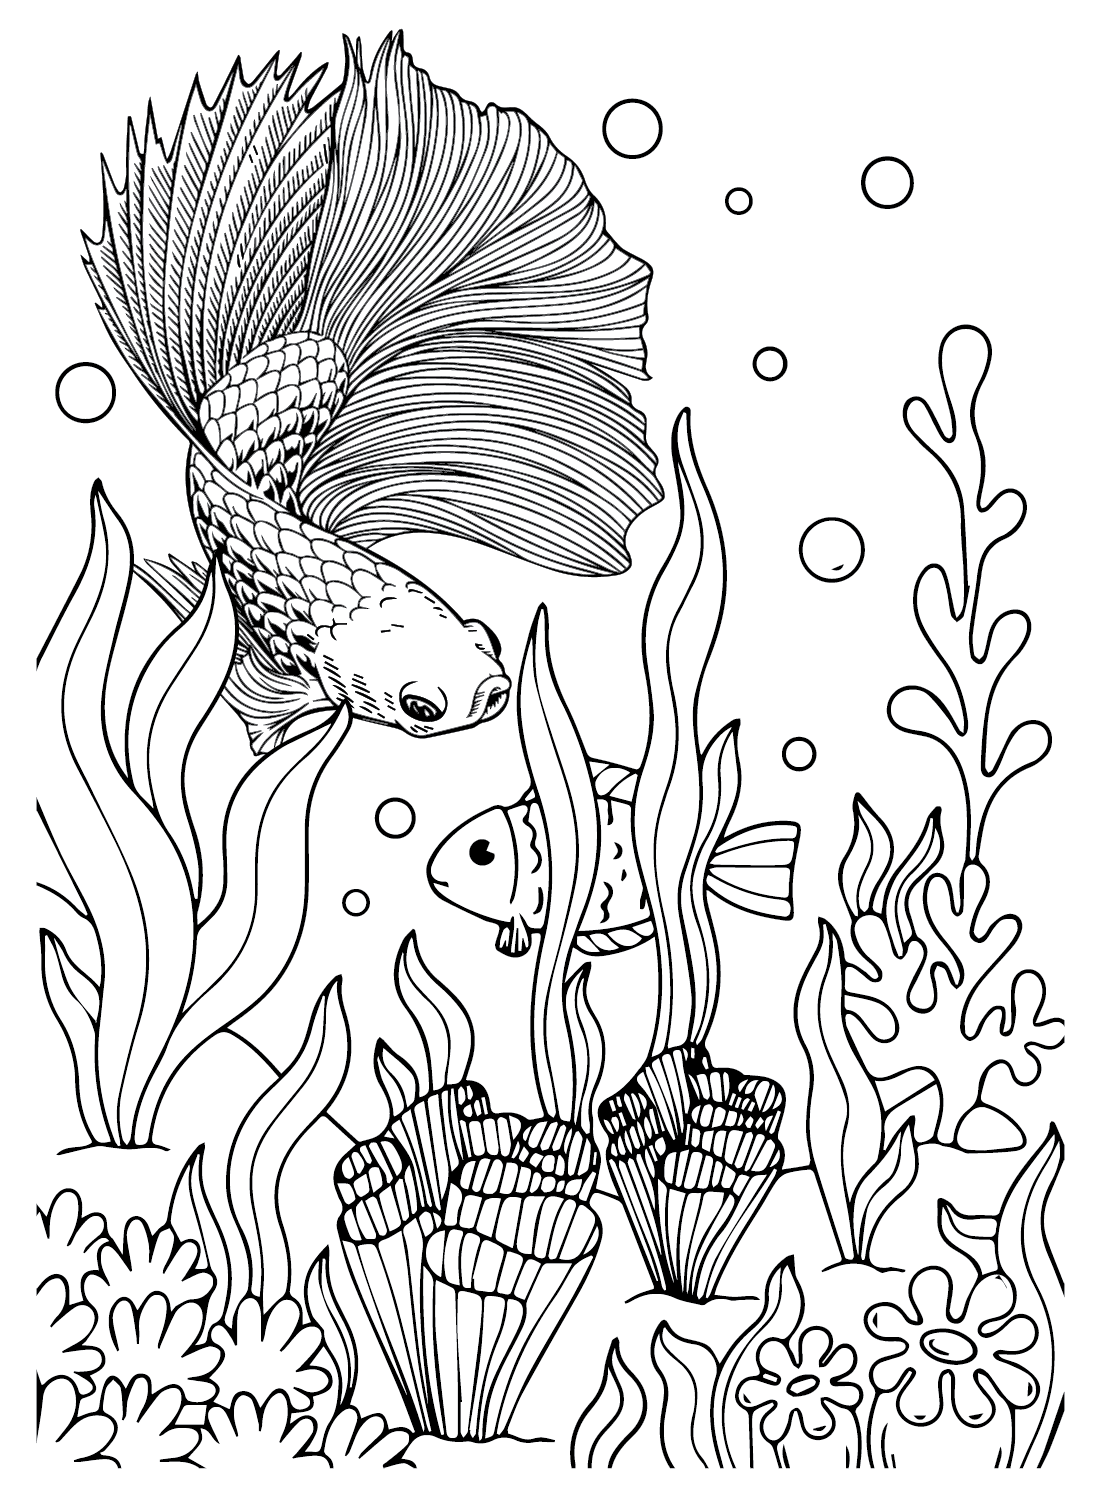 Картинки петушковая рыбка от бойцовой рыбки